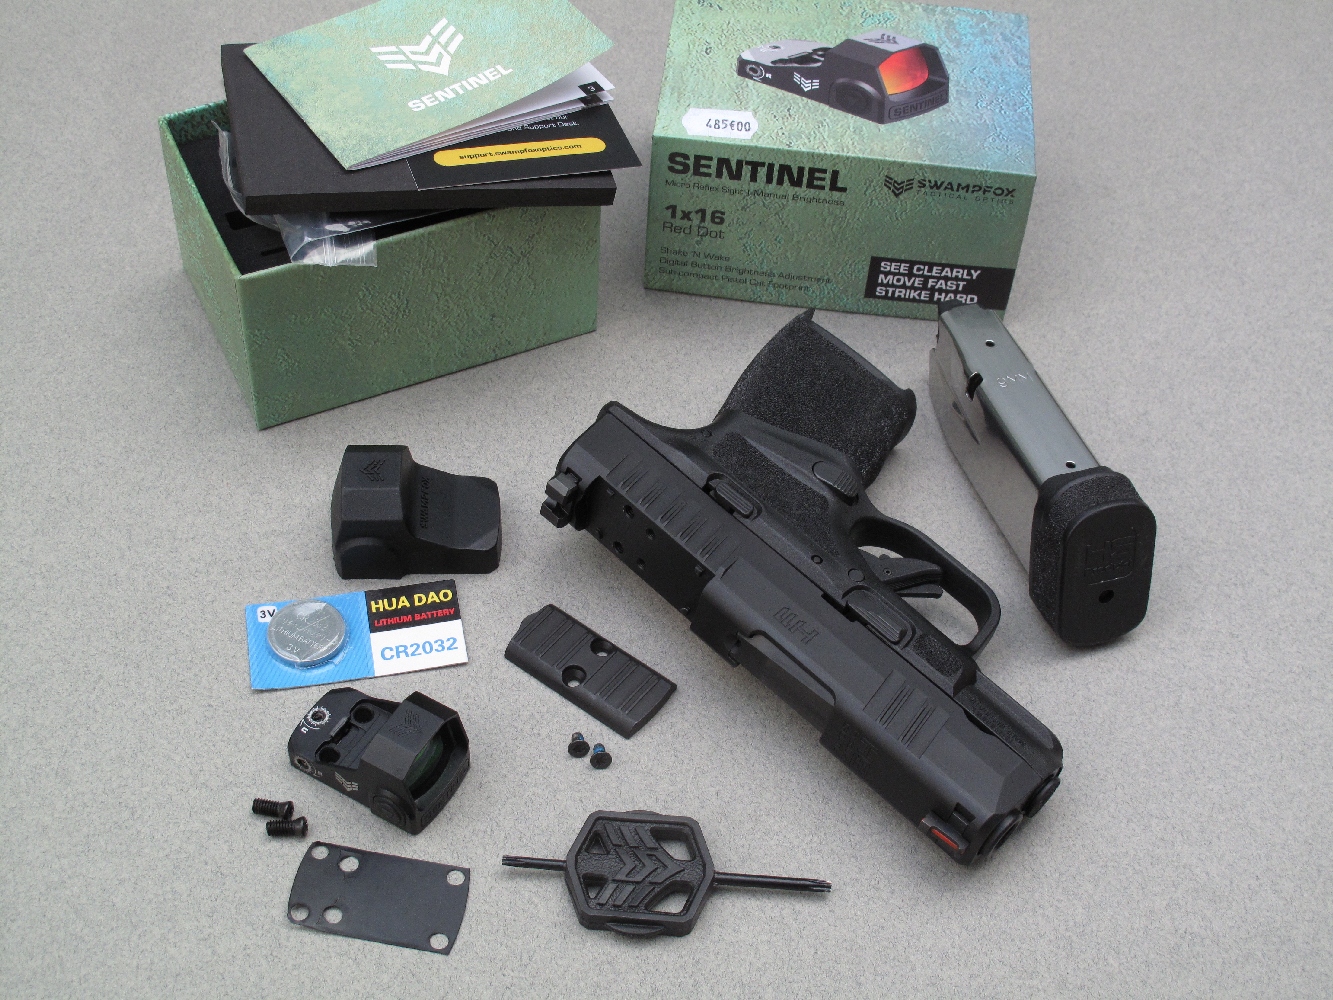 Le micro-viseur Swampfox Sentinel que nous avons installé sur ce pistolet est livré accompagné par sa batterie (une pile CR2032 de 3V), ses deux vis de fixation, un capuchon de protection en caoutchouc et un outil pour serrer les vis lors du montage.